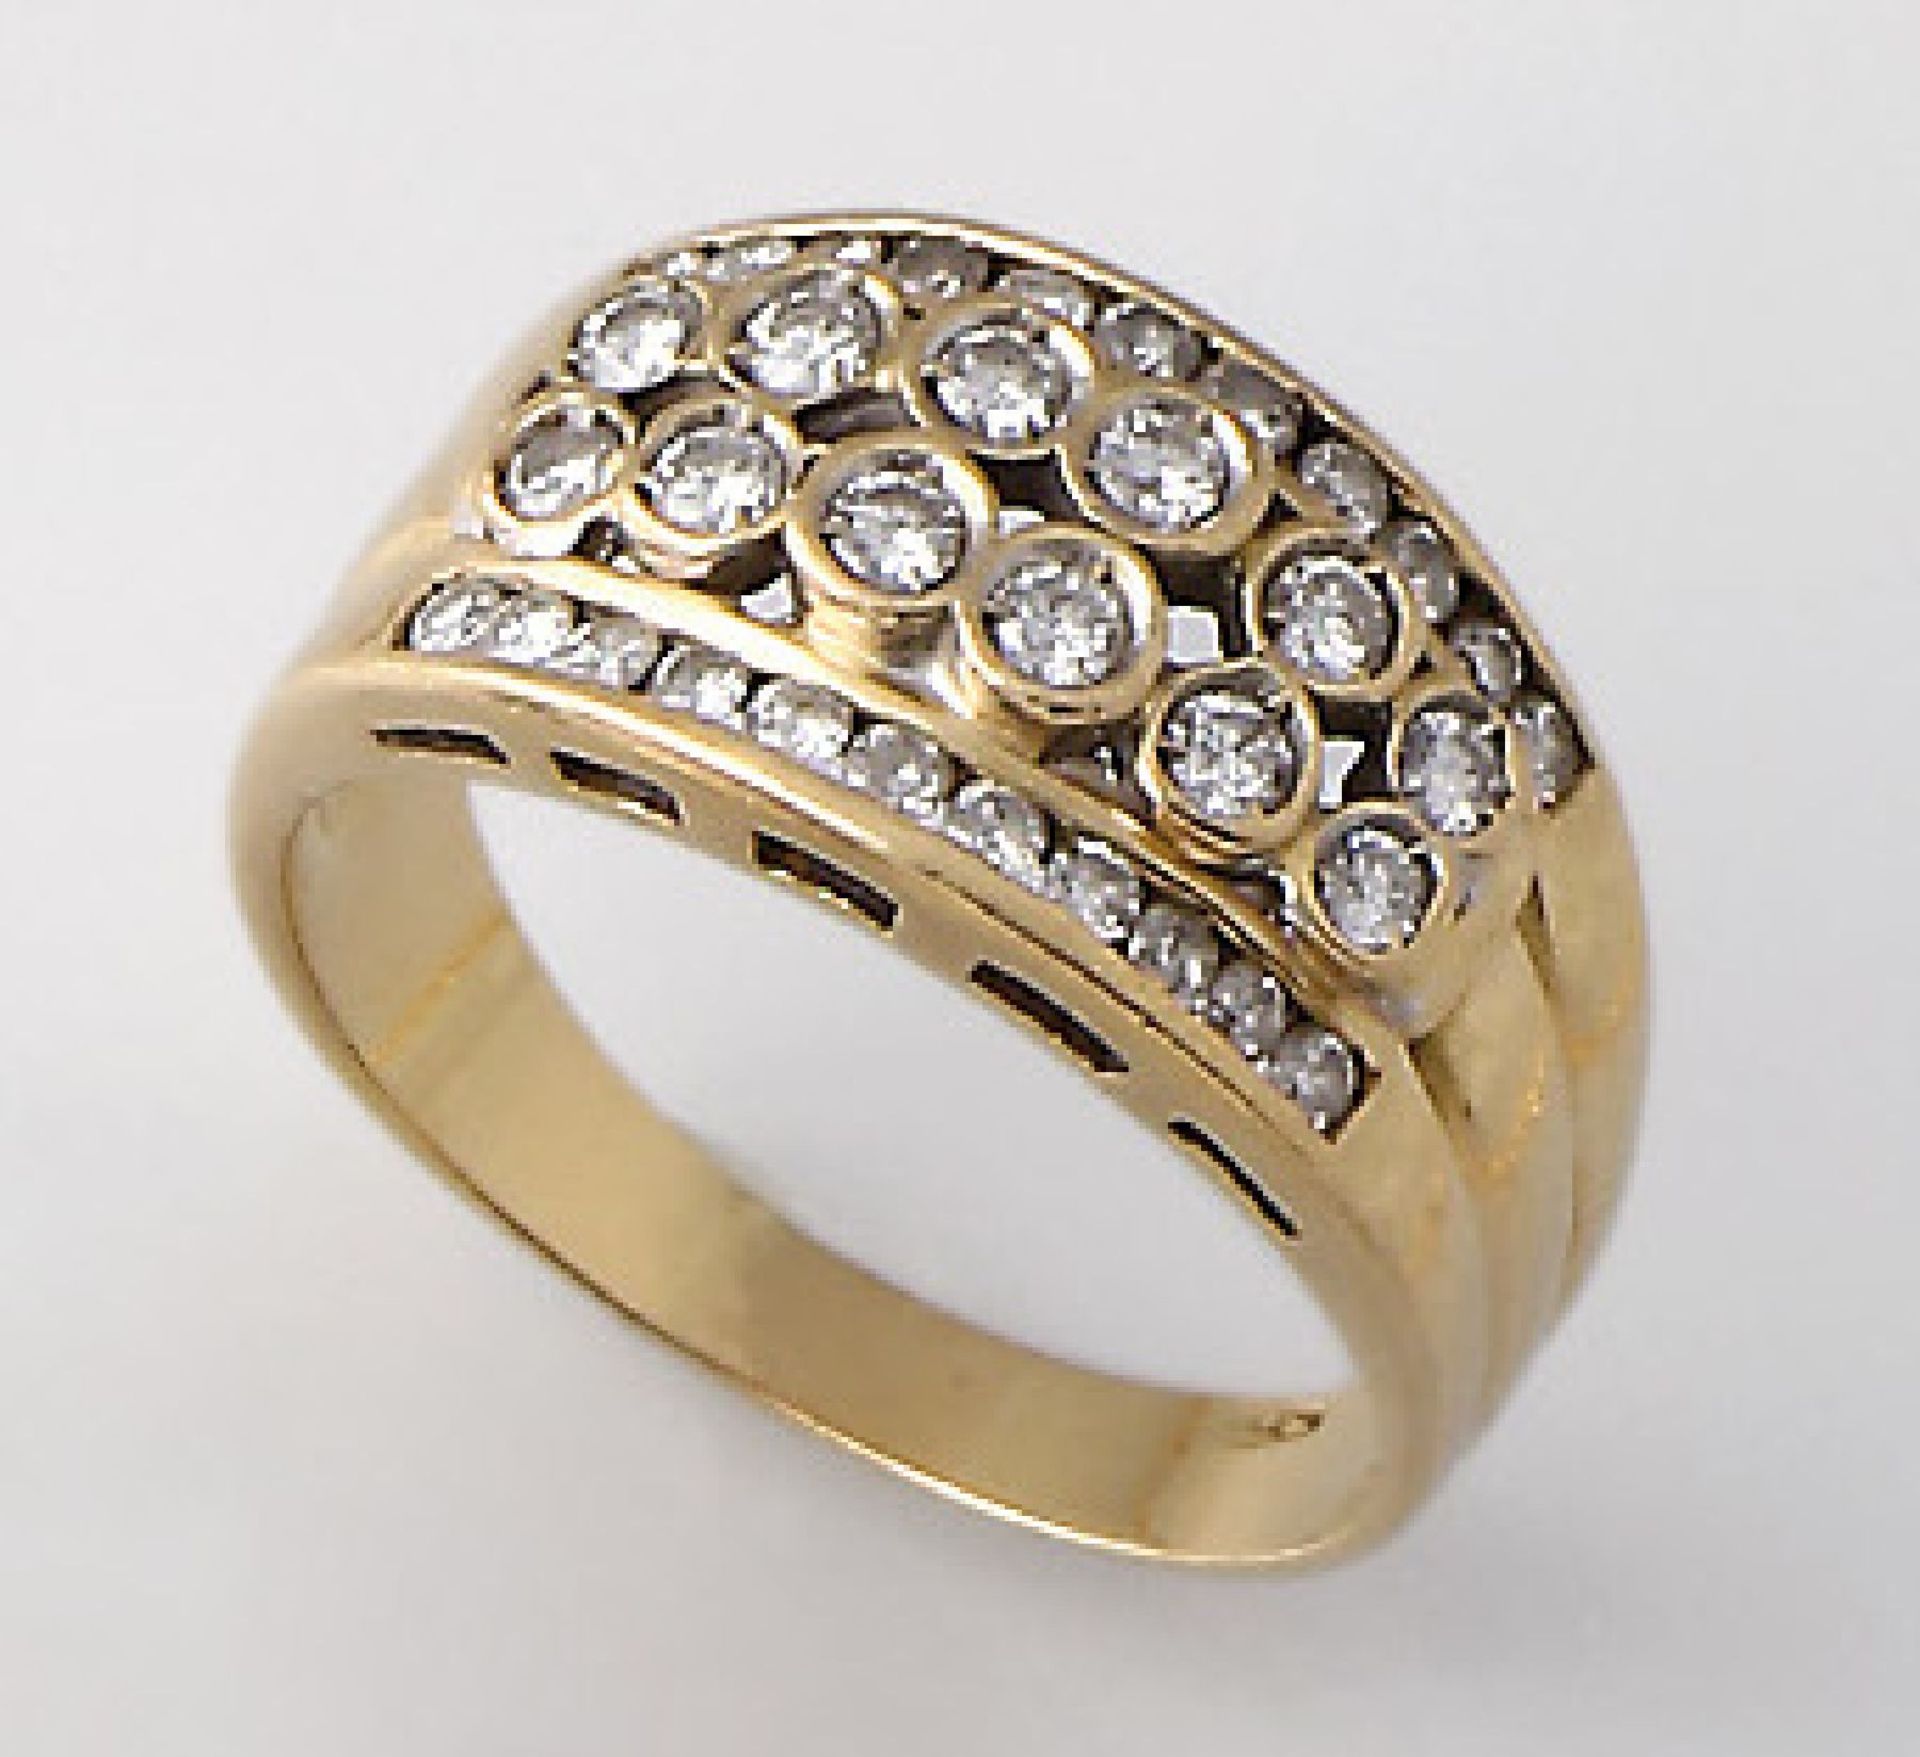 18 kt Gold Ring mit Brillanten, GG 750/000,Brillanten zus. ca. 1 ct Weiß/si-p1, z.T. erhaben bzw. im